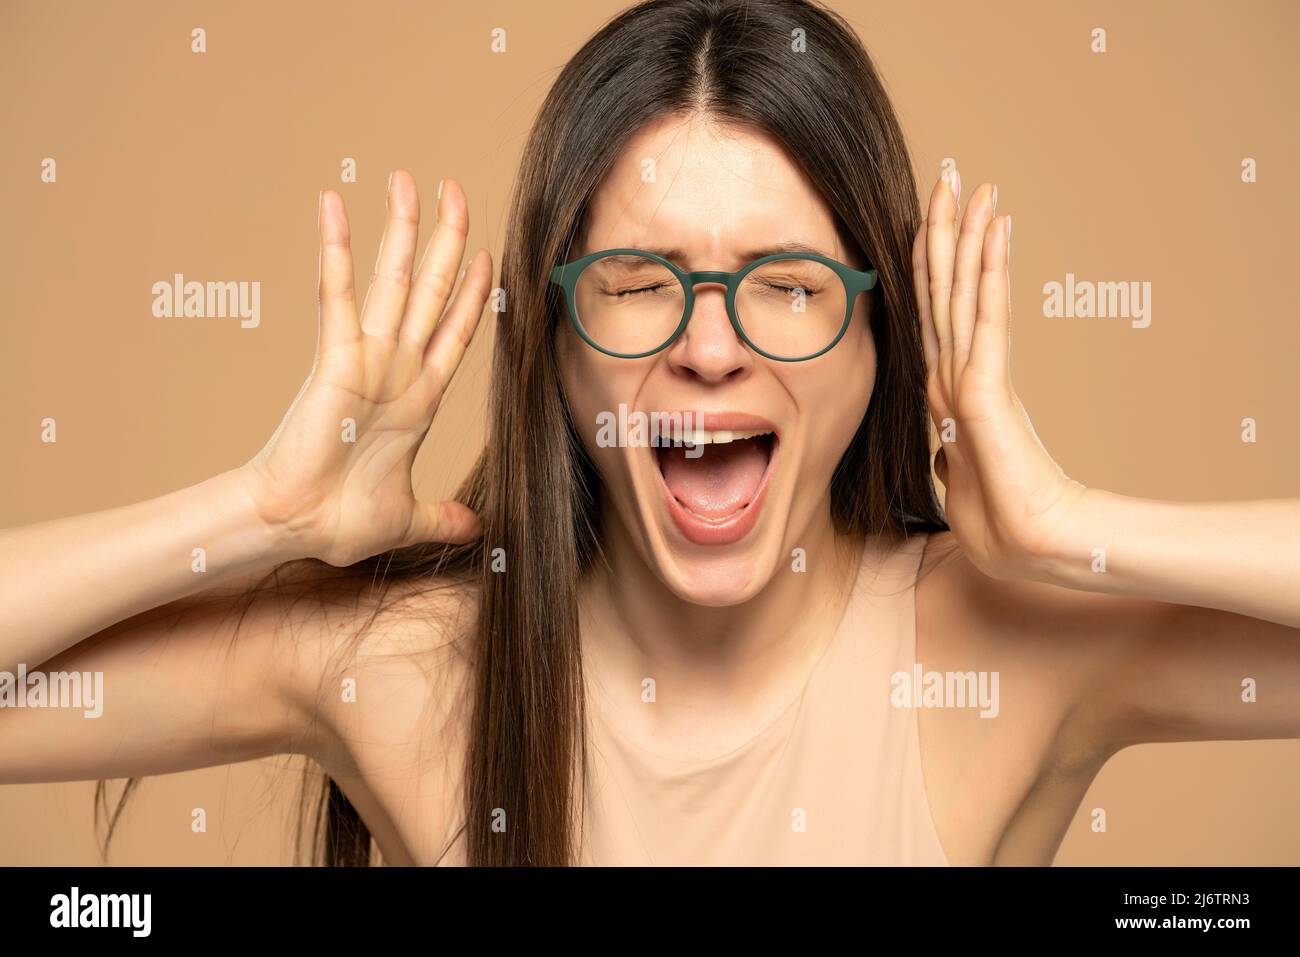 Nahaufnahme Porträt gestresst frustriert Frau mit Brille schreiend mit Temperament Tantrum isoliert auf beigem Hintergrund. Negative menschliche Emotionen Gesichtsbehandlung ex Stockfoto